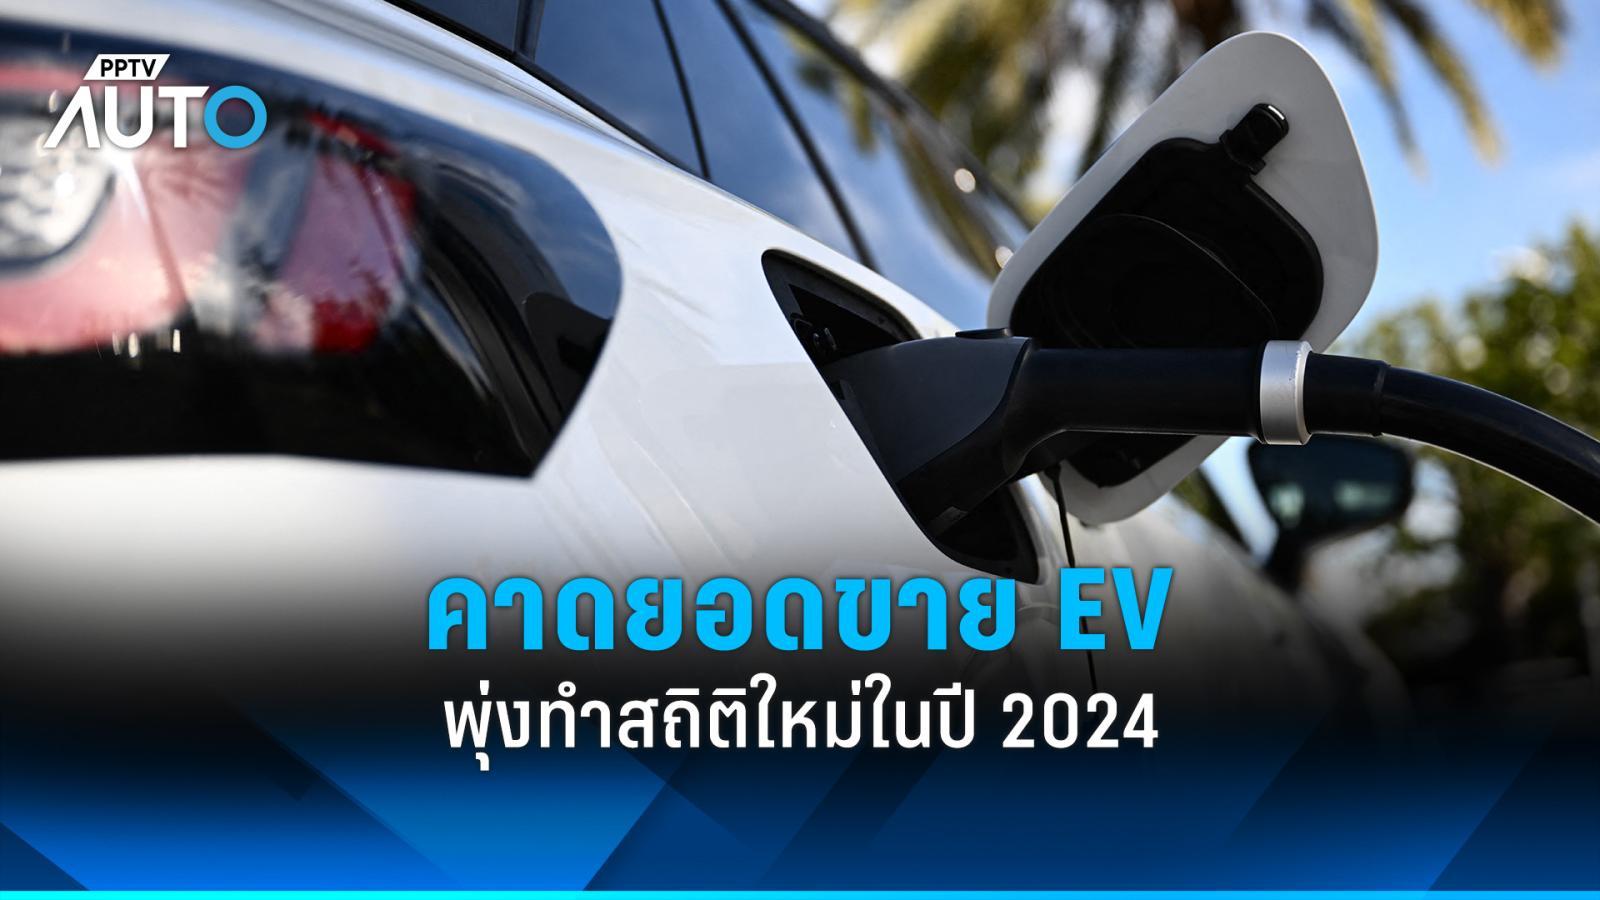 คาดยอดขายรถยนต์ไฟฟ้า-ไฮบริดทั่วโลกปี 2024 พุ่งทำสถิติใหม่